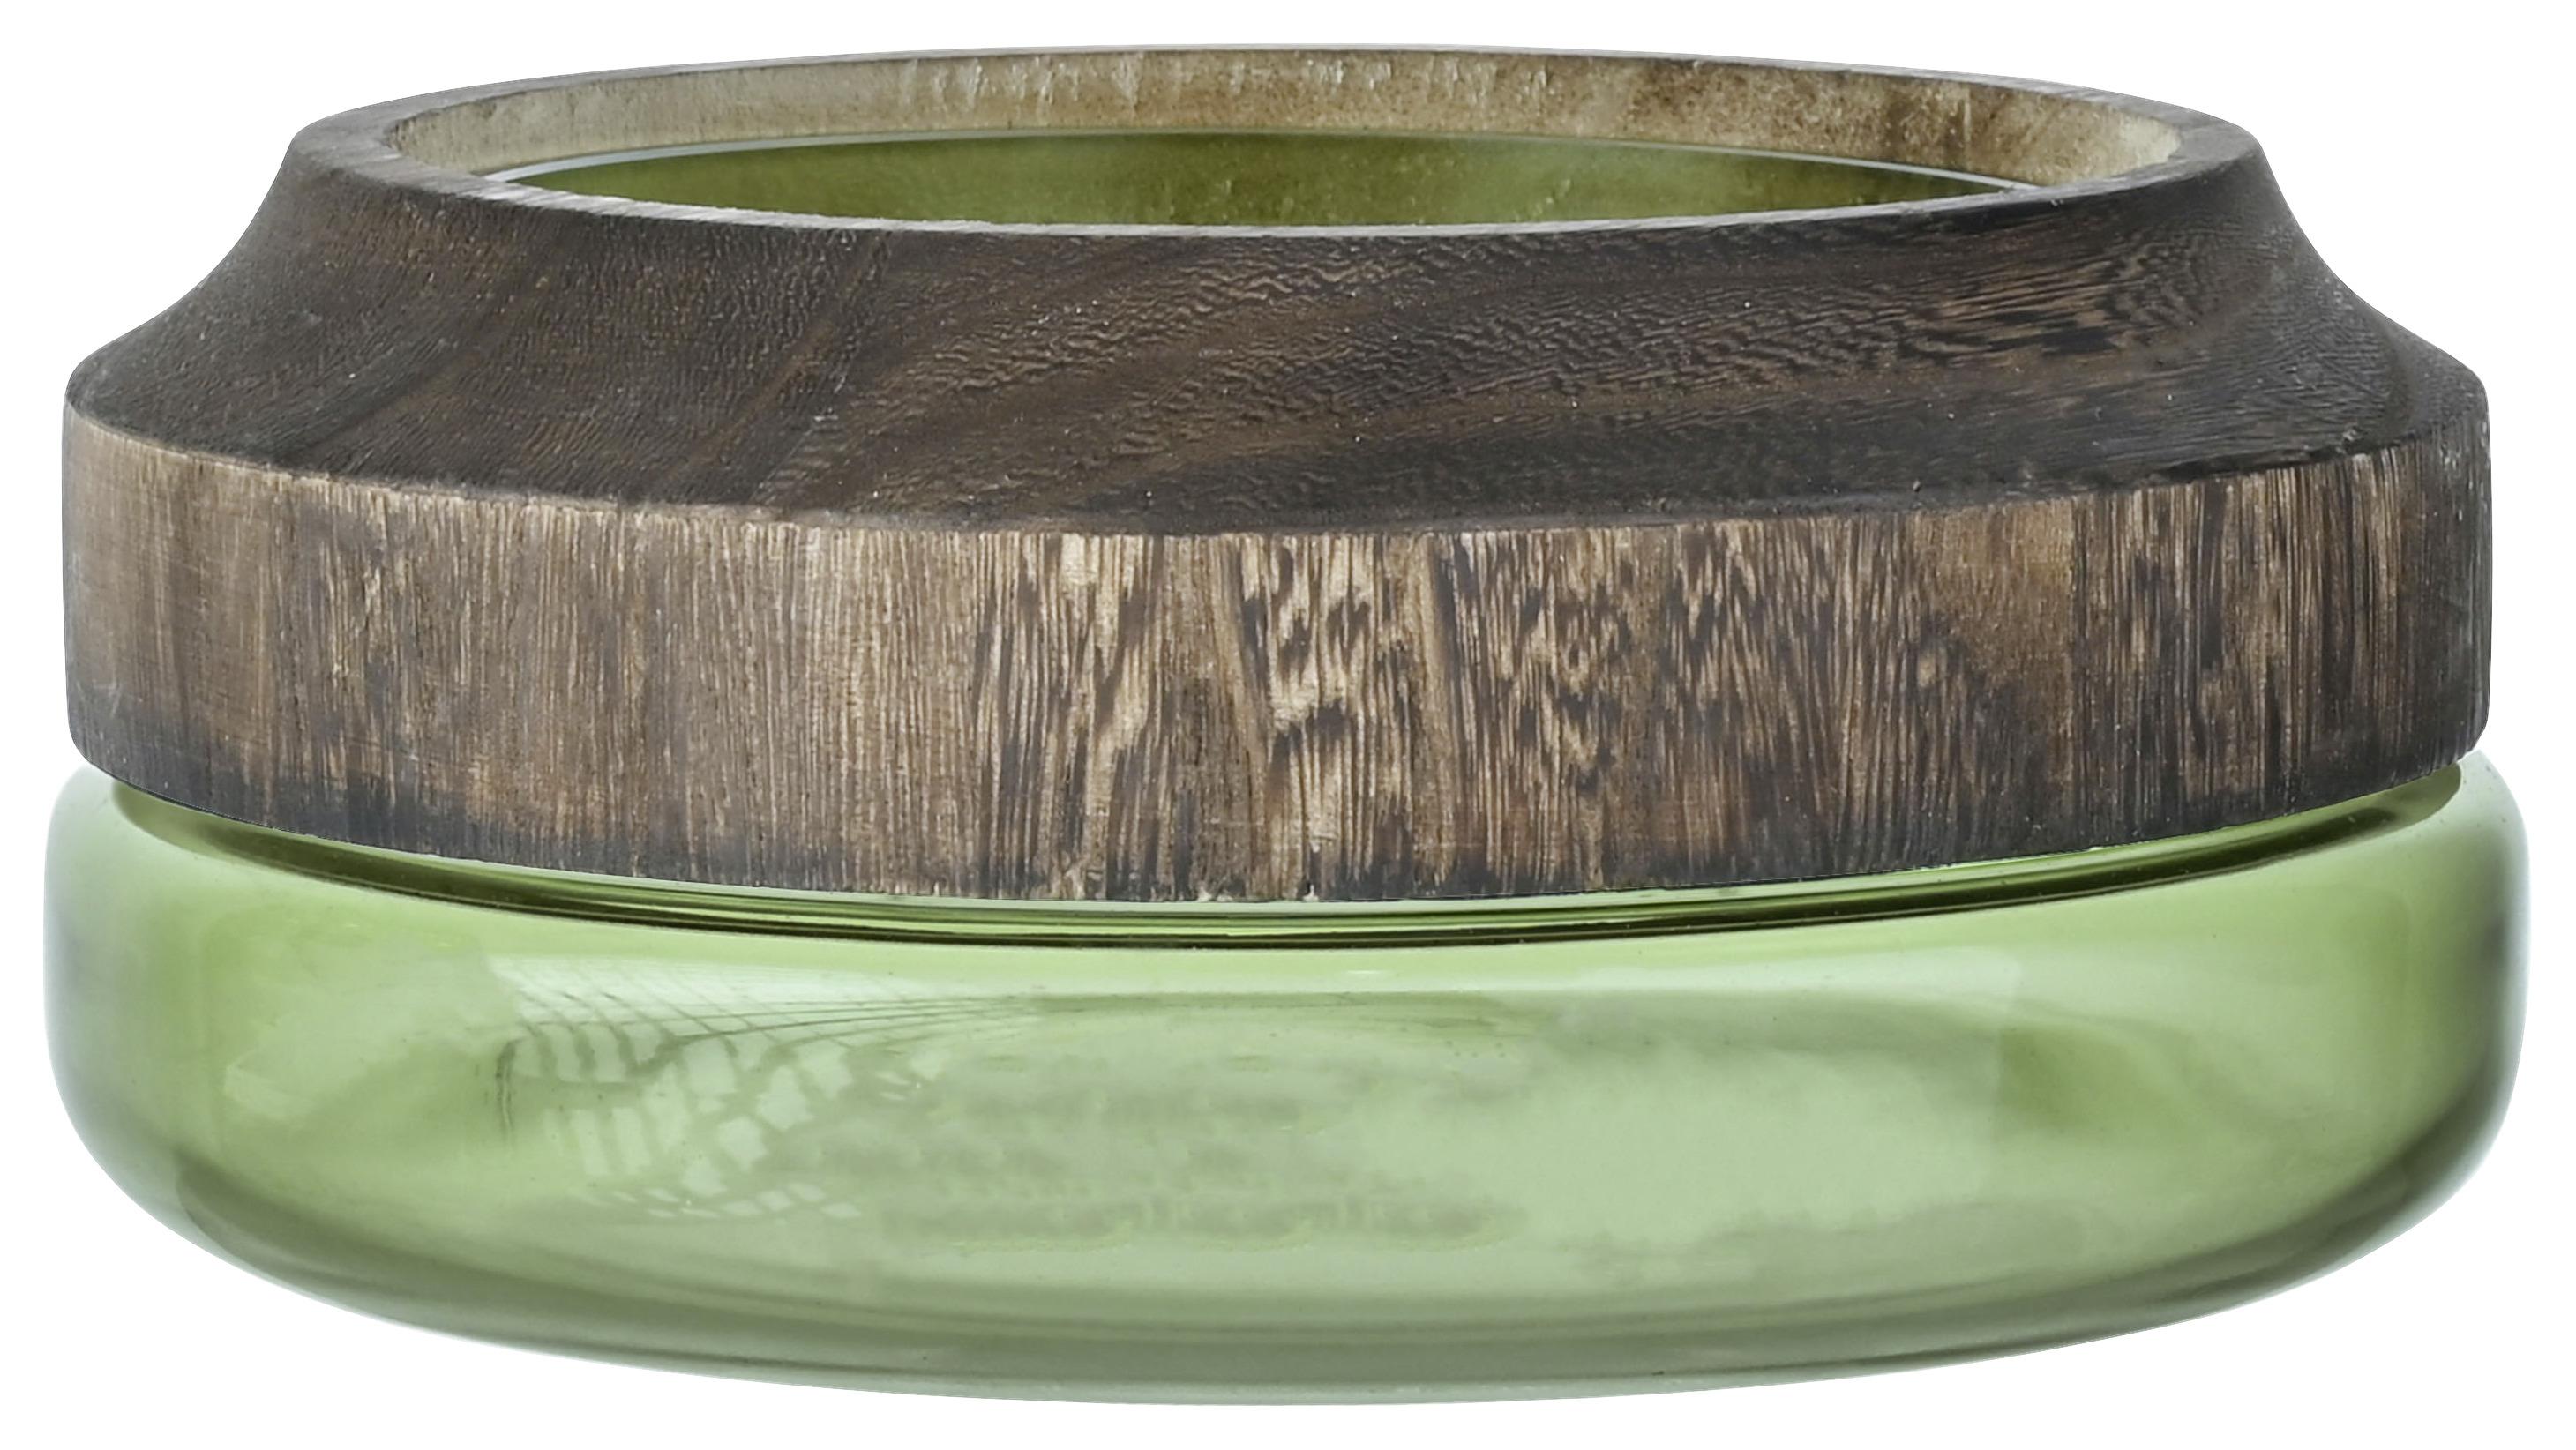 Dekorační Miska Wood, 26/11 Cm - zelená/přírodní barvy, dřevo/sklo (26/11cm) - Premium Living